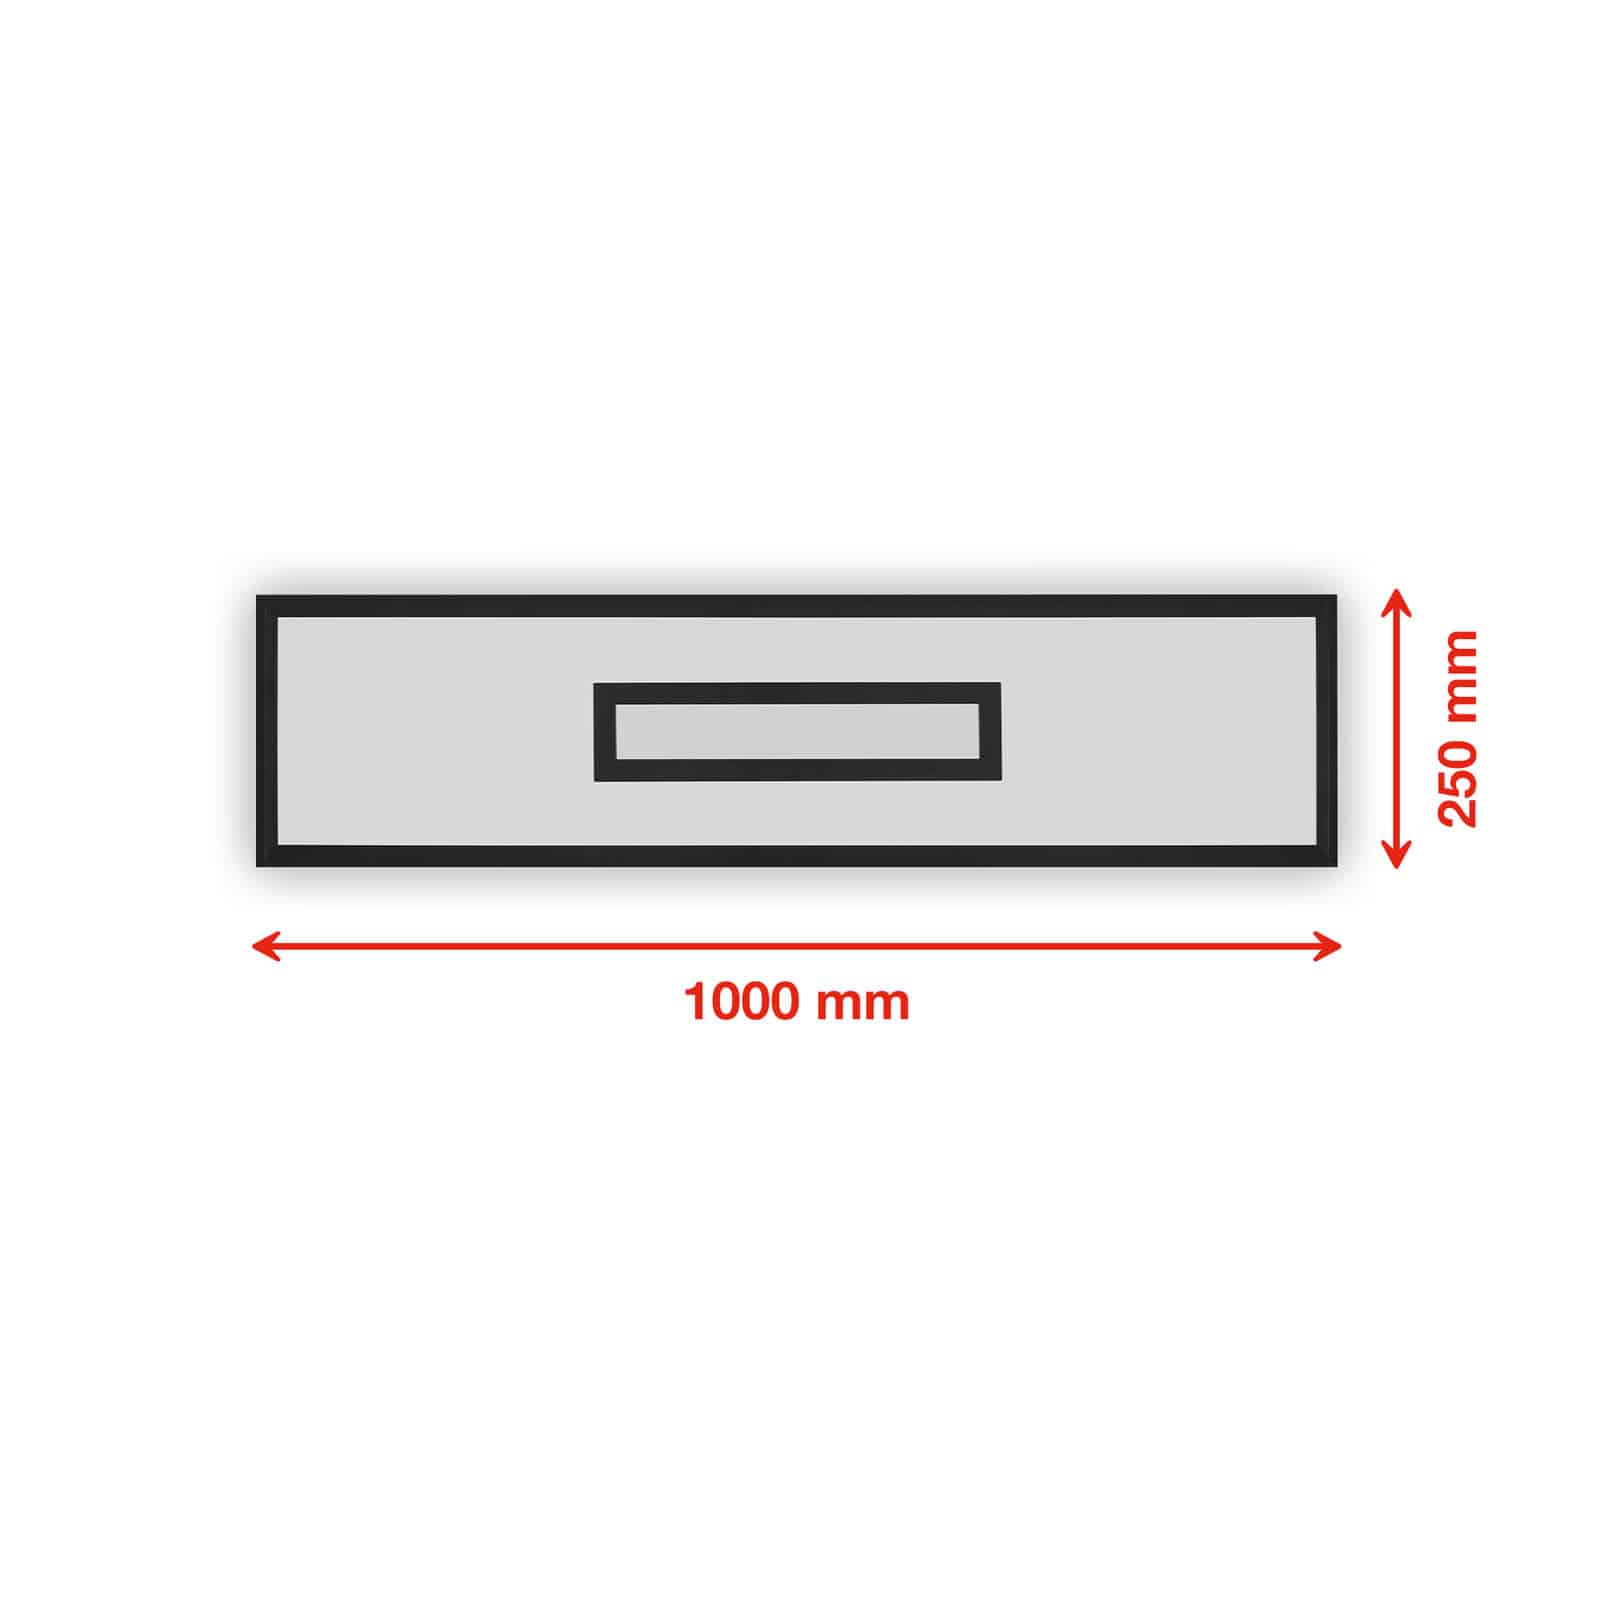  LED Panel mit Backlight dimmbar - 100x25x6cm - Deckenleuchte 24W 2500lm RGB CCT 3000–6500K Fernbedienung Timer Memory Deckenlampe Wohnzimmer | schwarz  - 5